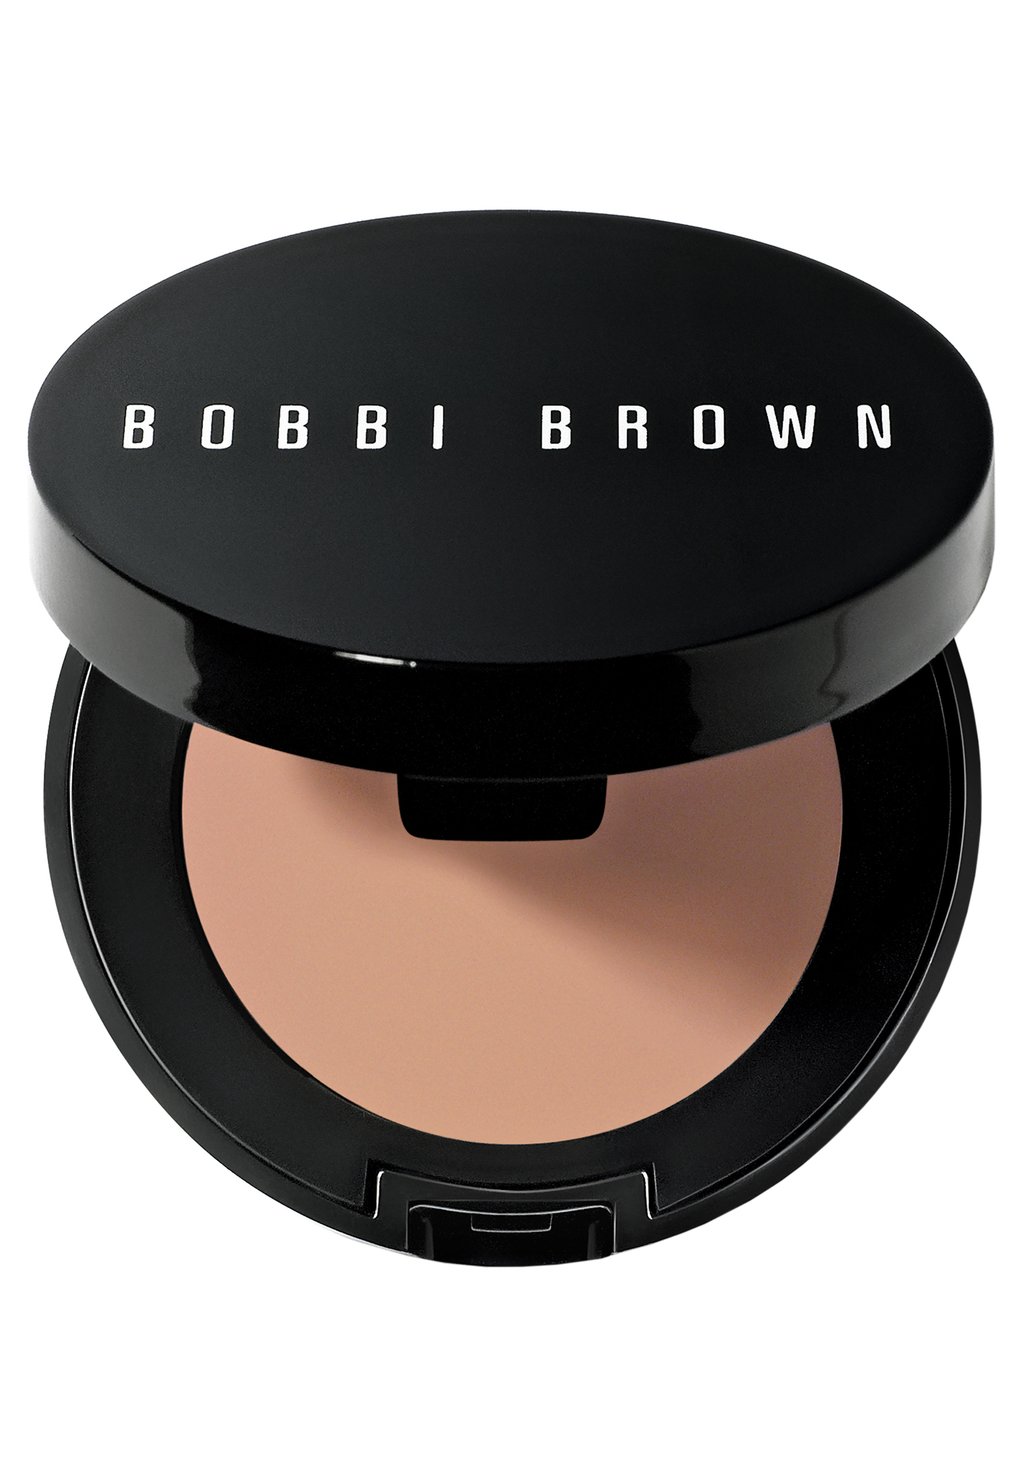 Консилер Corrector Bobbi Brown, цвет bisque bobbi brown устойчивый корректор в стике skin corrector stick bisque